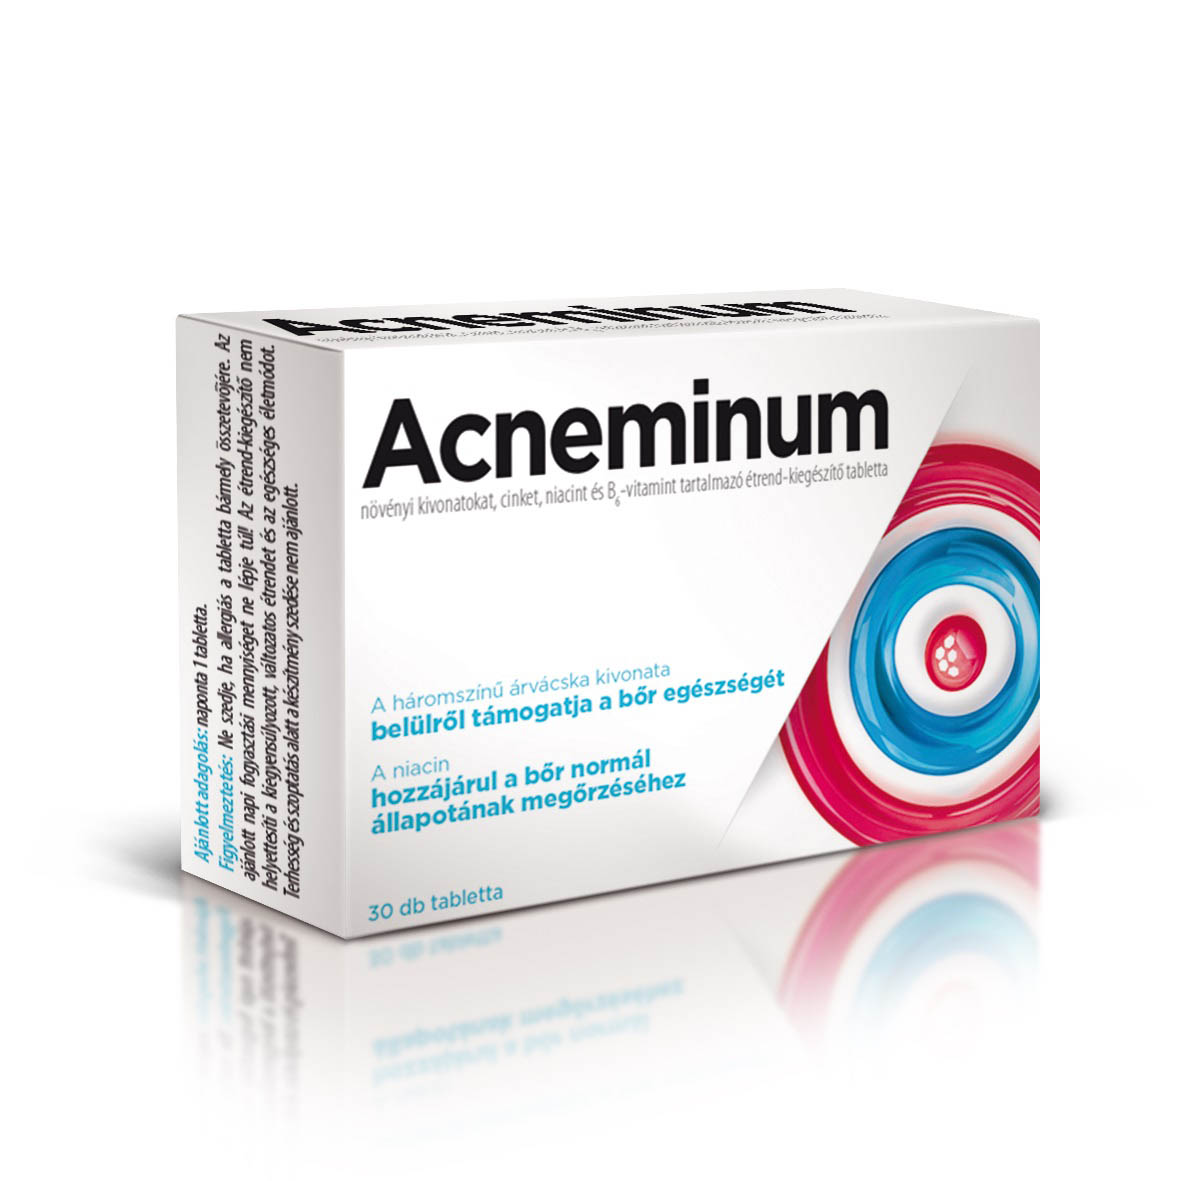 acneminum tabletta